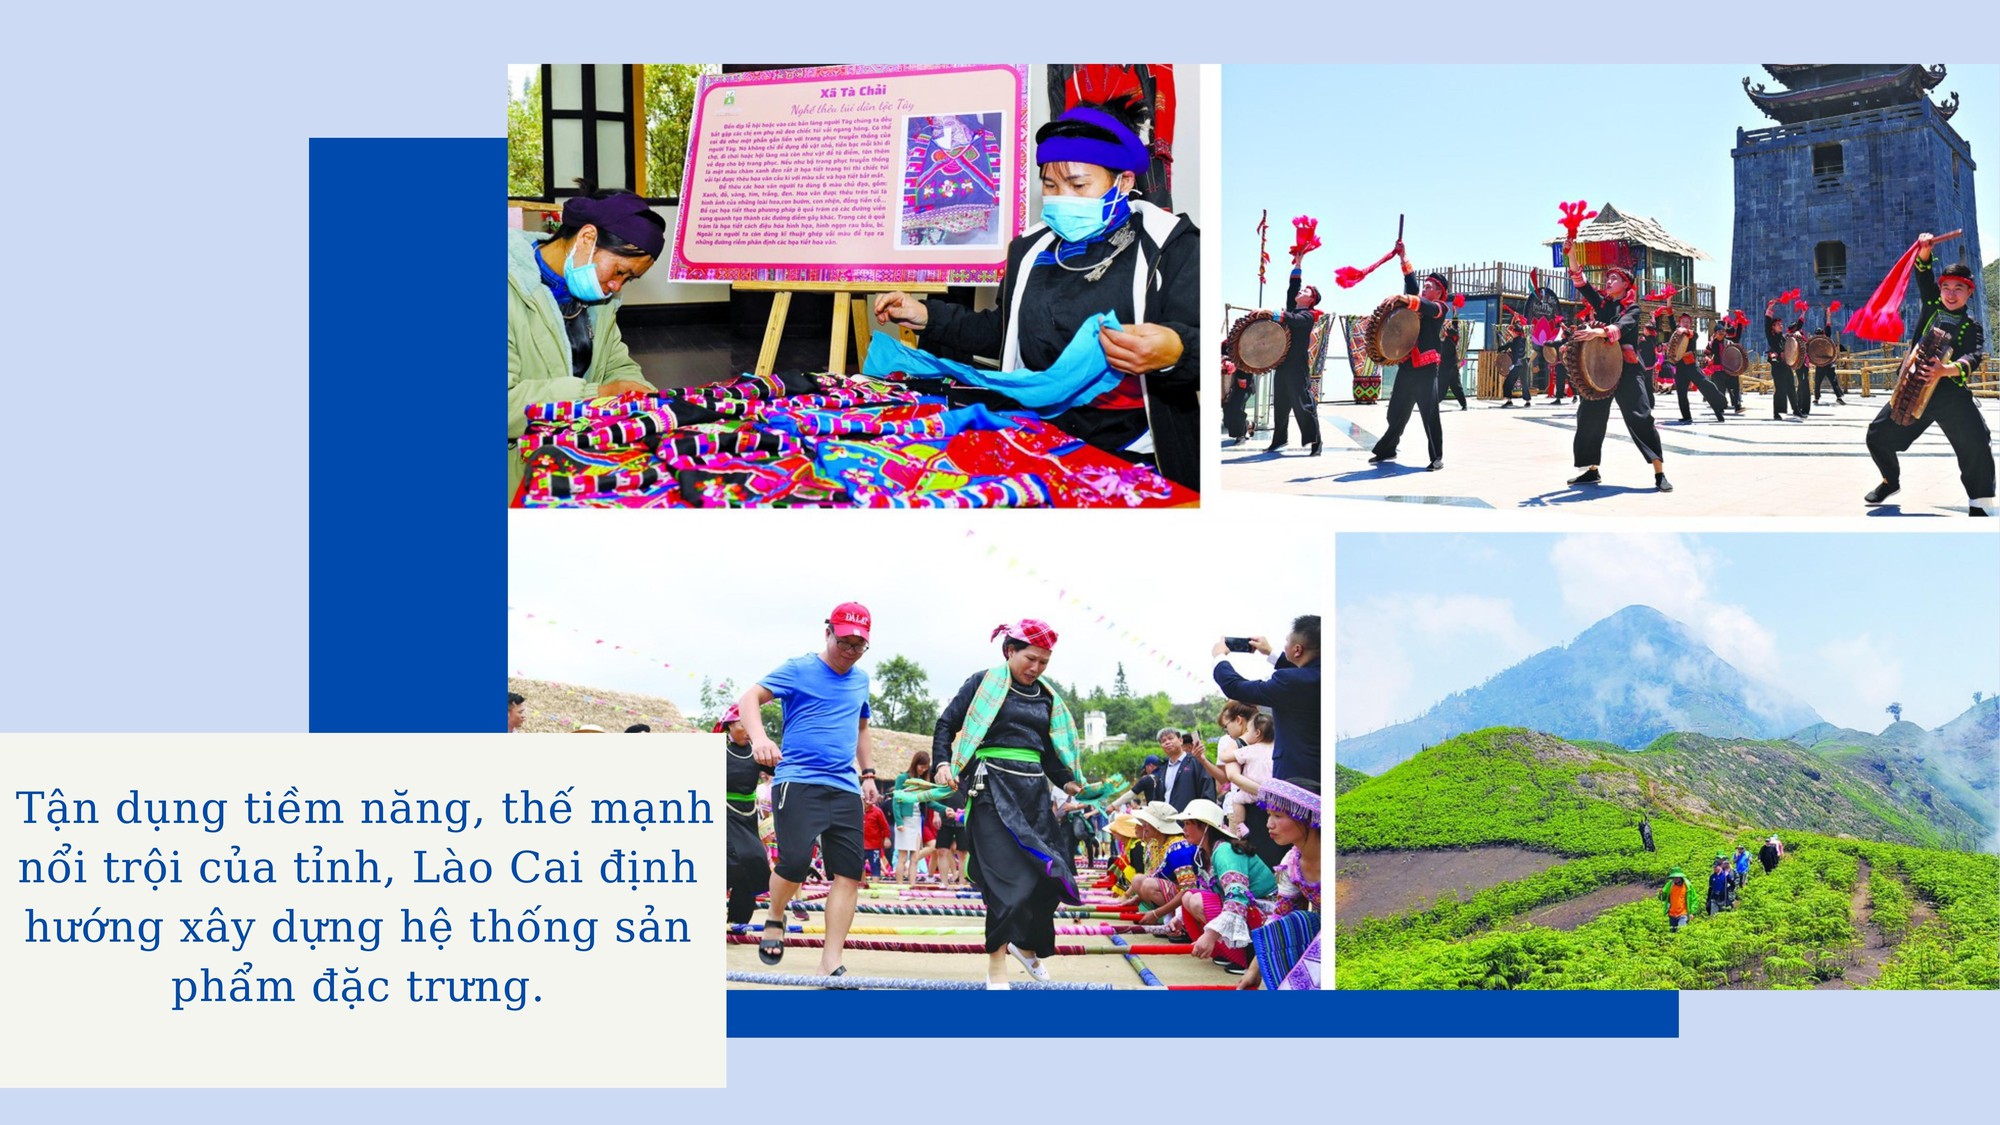 Khách quốc tế trở lại - tín hiệu vui cho du lịch Lào Cai - Ảnh 1.